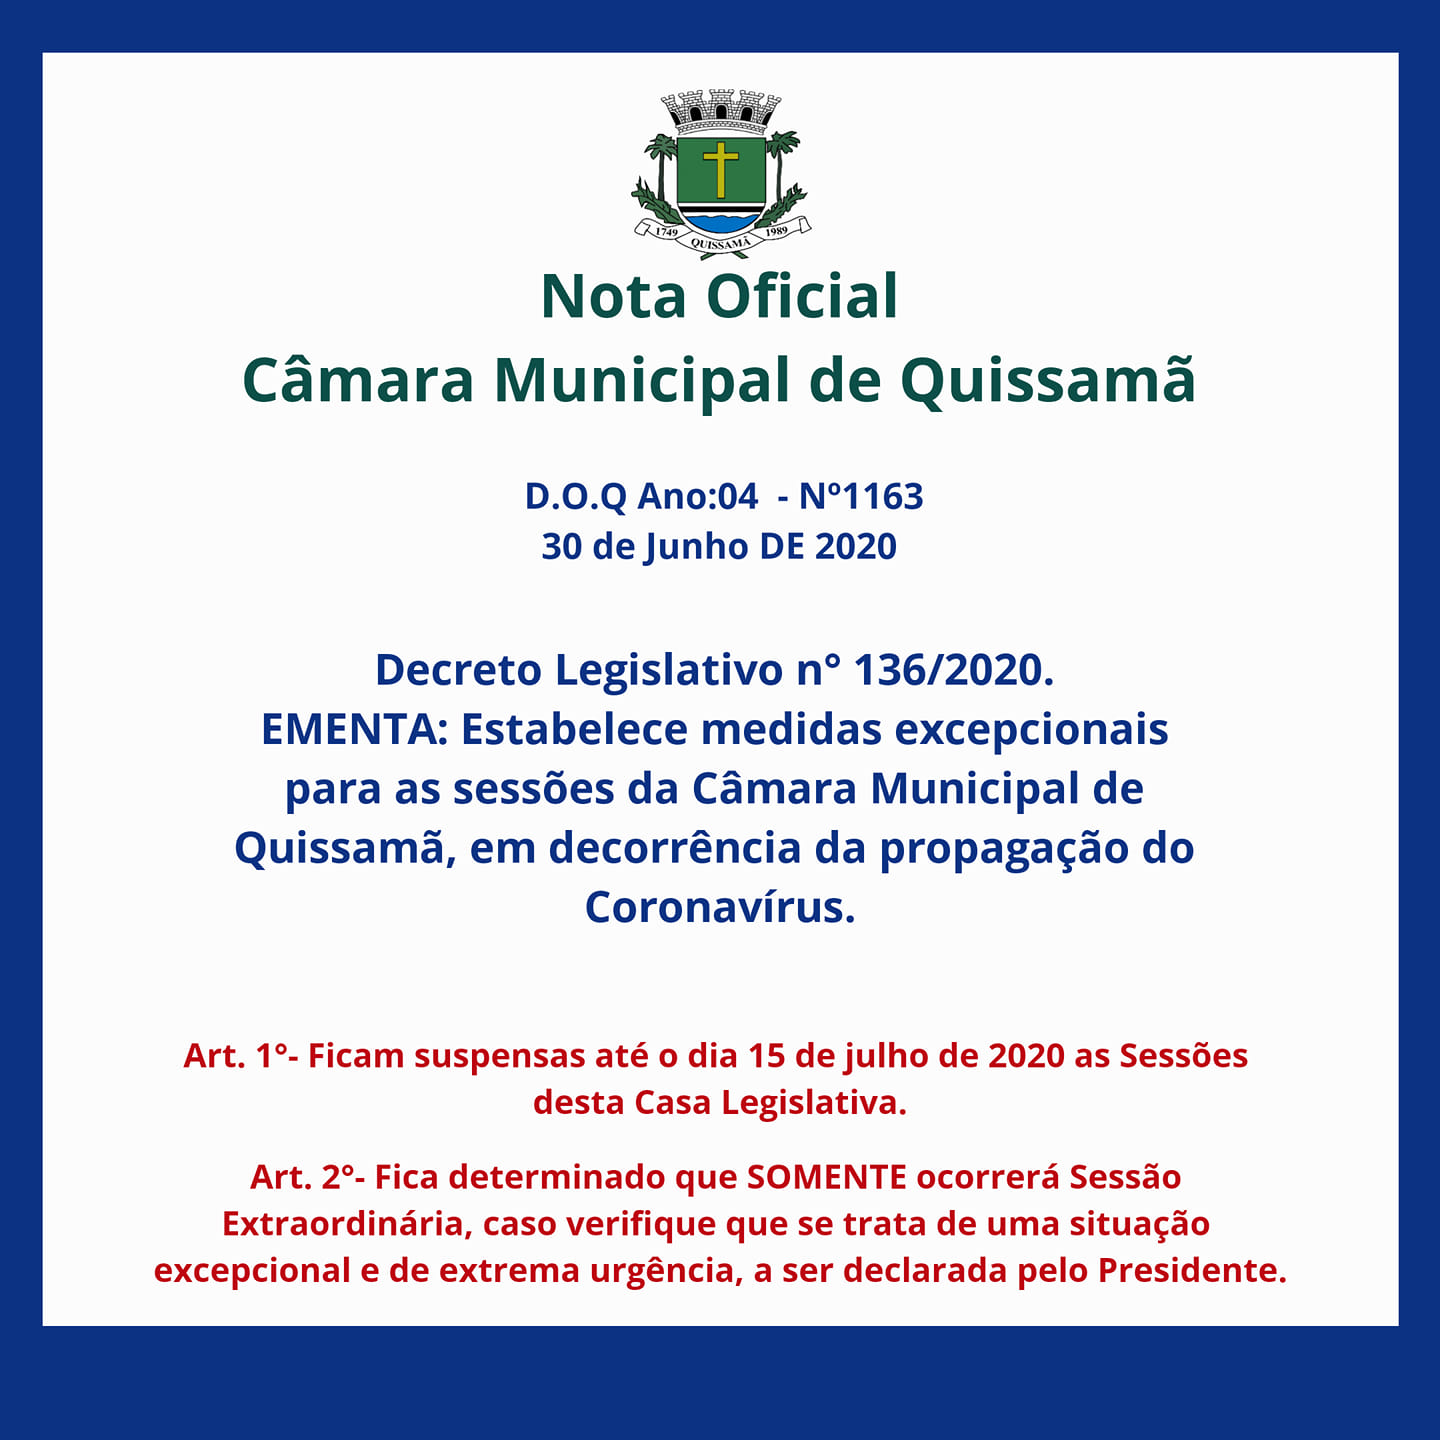 Novo Decreto Estabelece medidas excepcionais para as sessões da Câmara Municipal de Quissamã, em decorrência da propagação do Coronavírus.